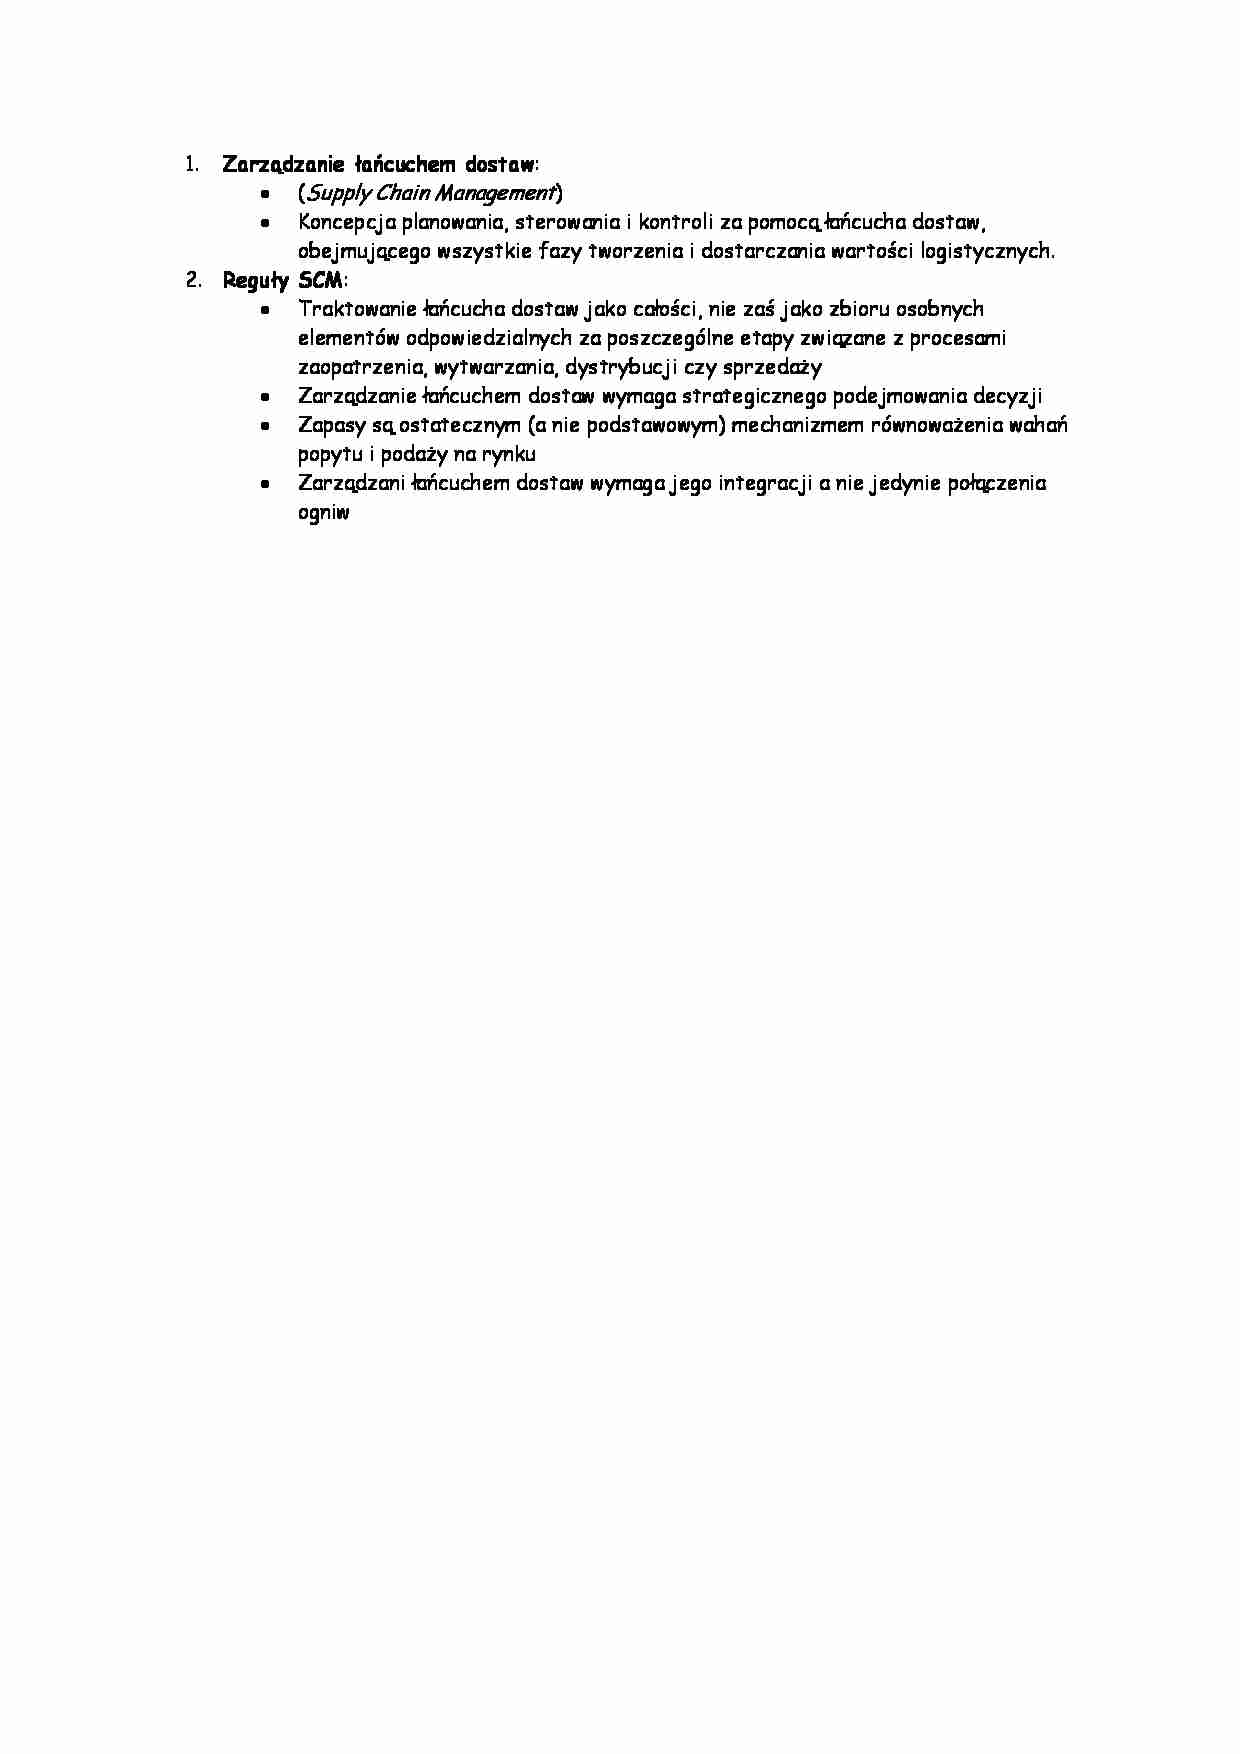 Zarządzanie łańcuchem dostaw - strona 1